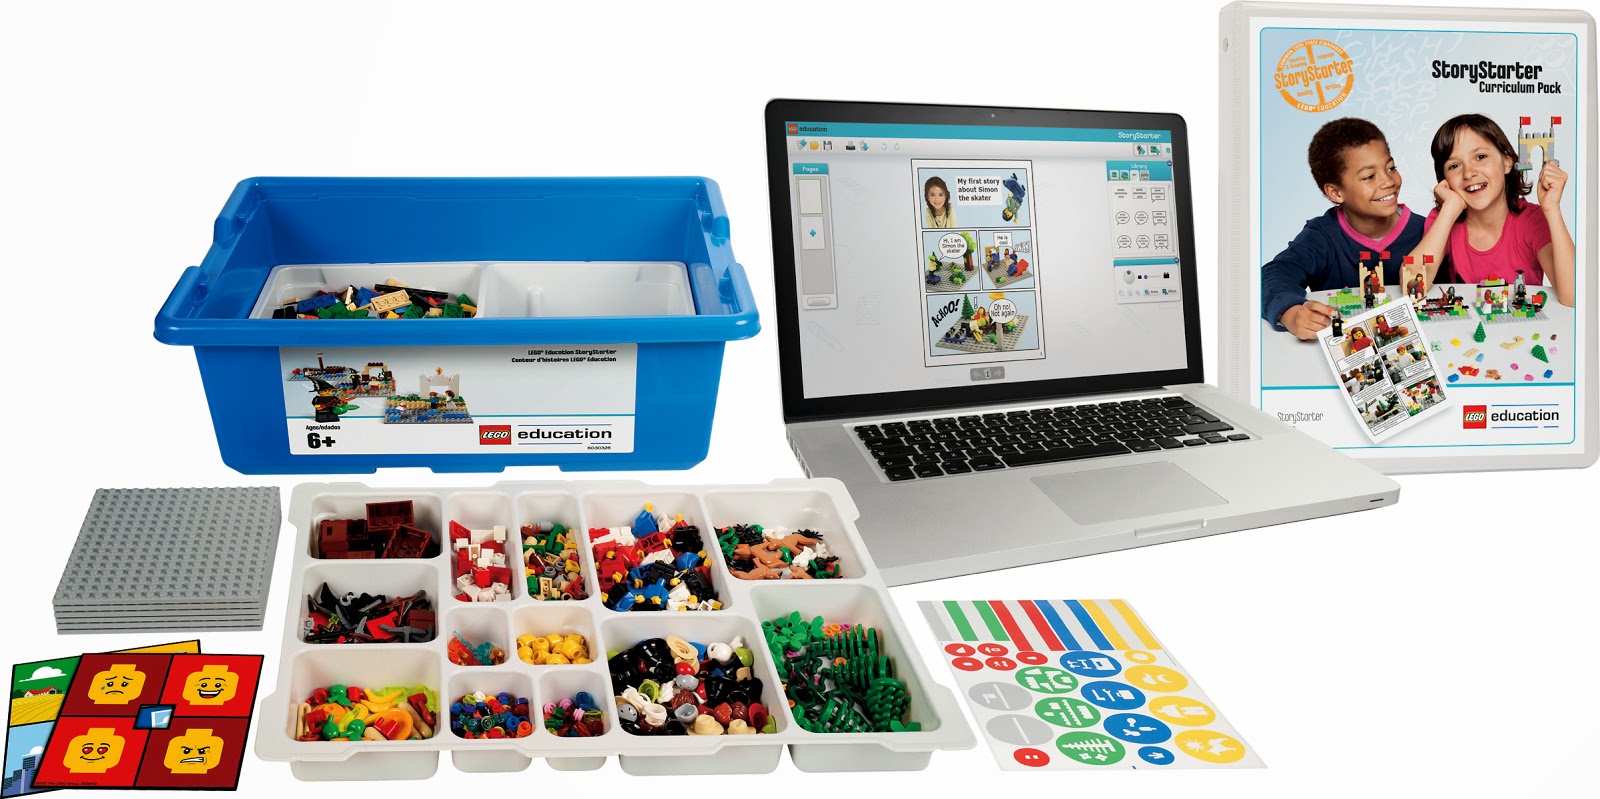 Lego education pour apprendre le STEM